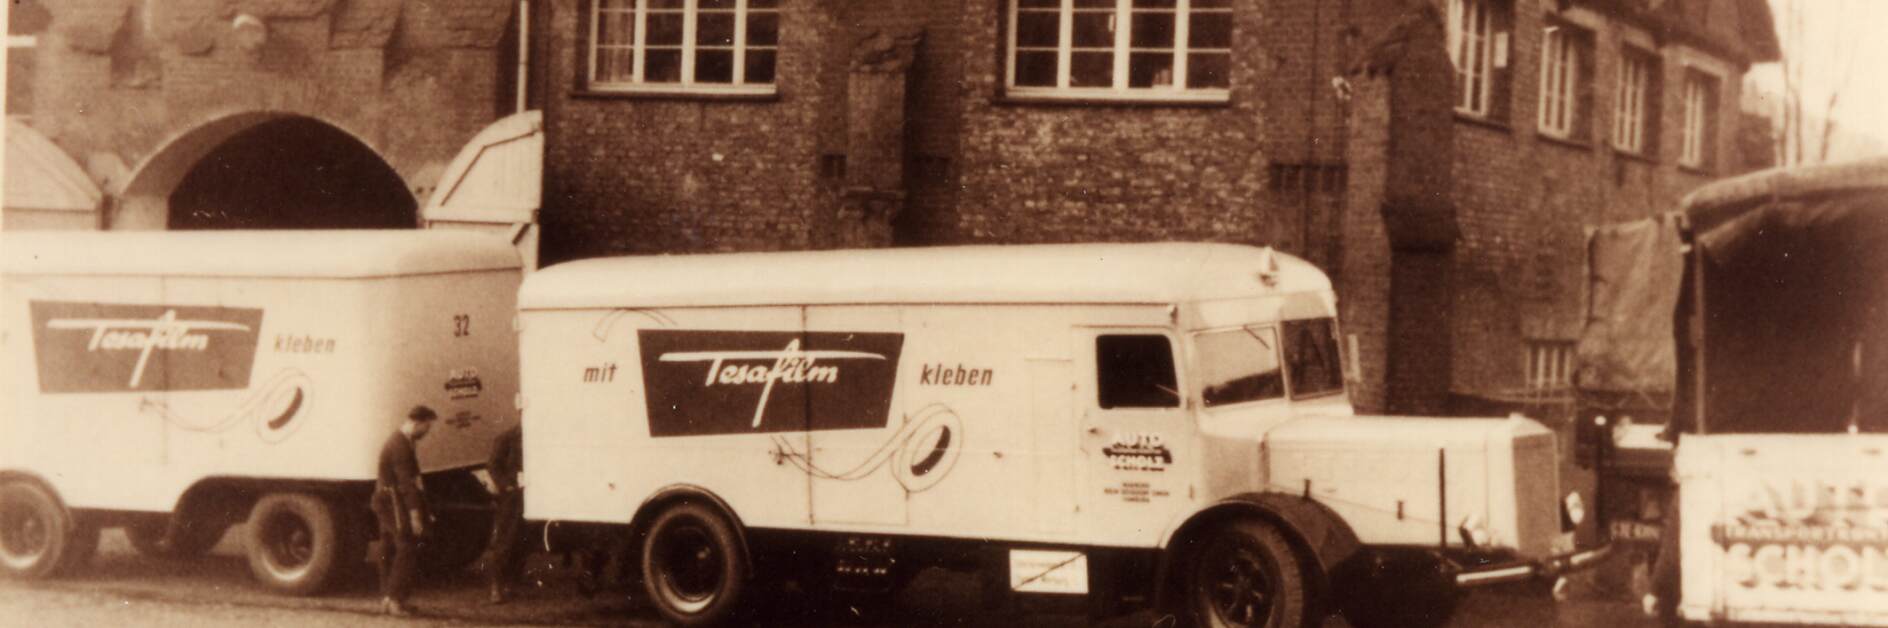 Вантажівка tesa з рекламою плівок tesa з 1952 року